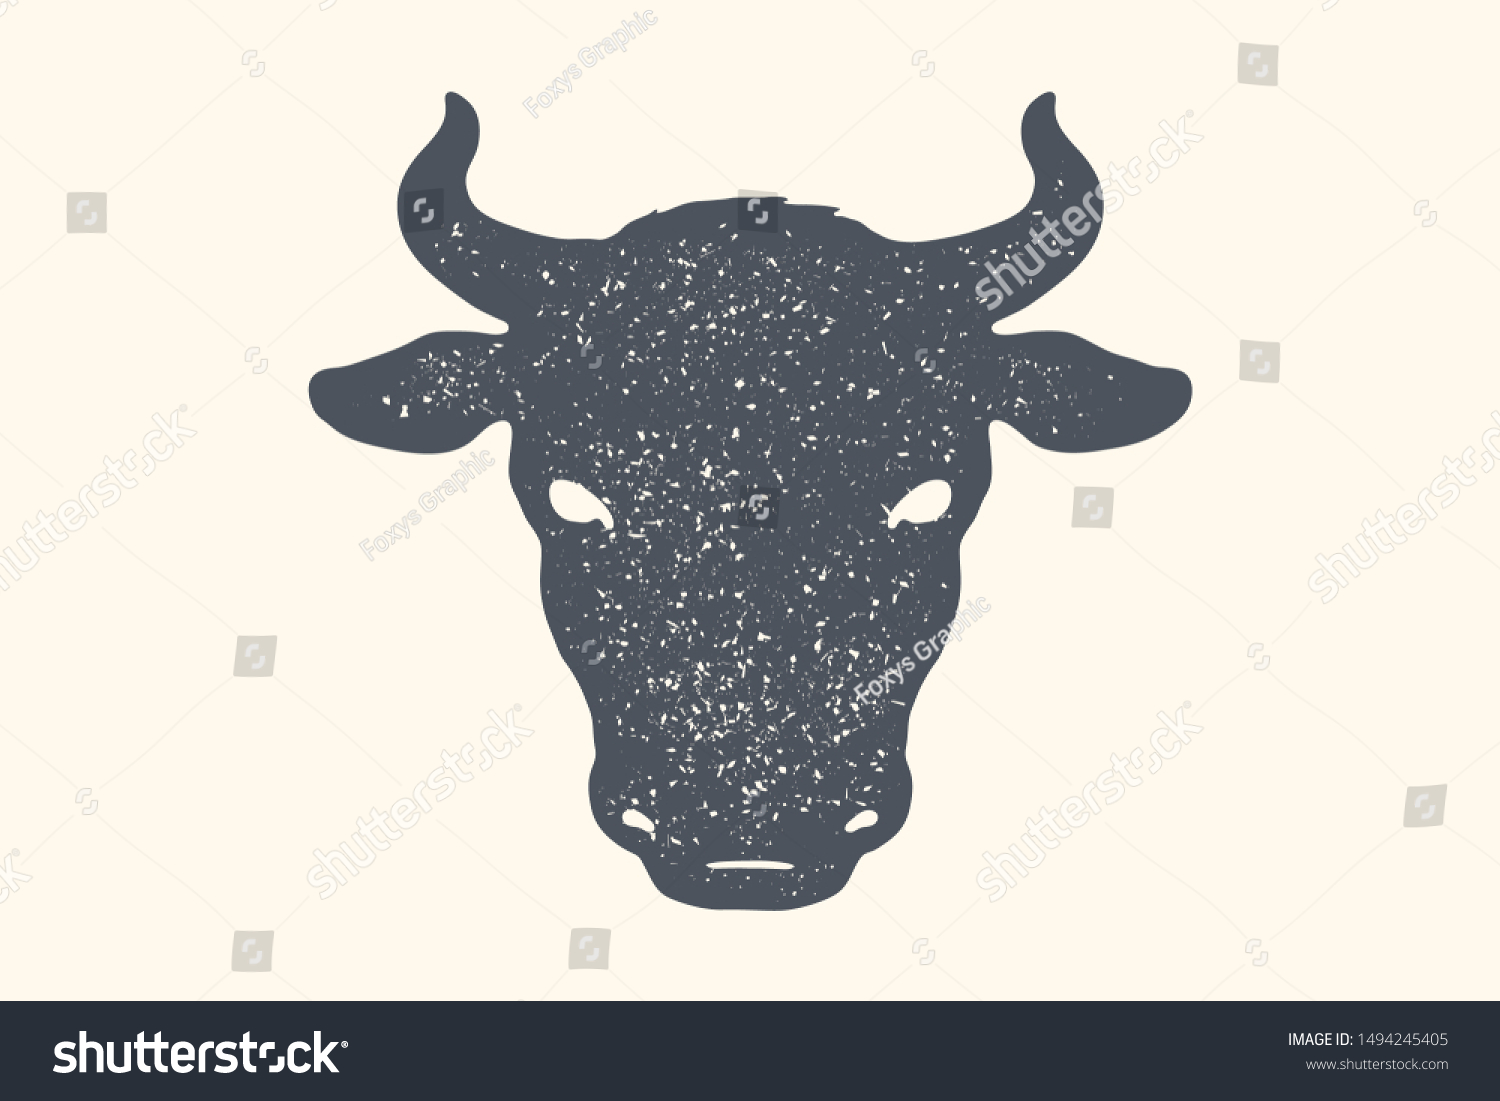 牛 牛 レトロなビンテージ印刷 ポスター バナー 肉屋の黒と白のシルエット牛の頭 シルエット牛の頭 肉のテーマ イラスト のイラスト素材